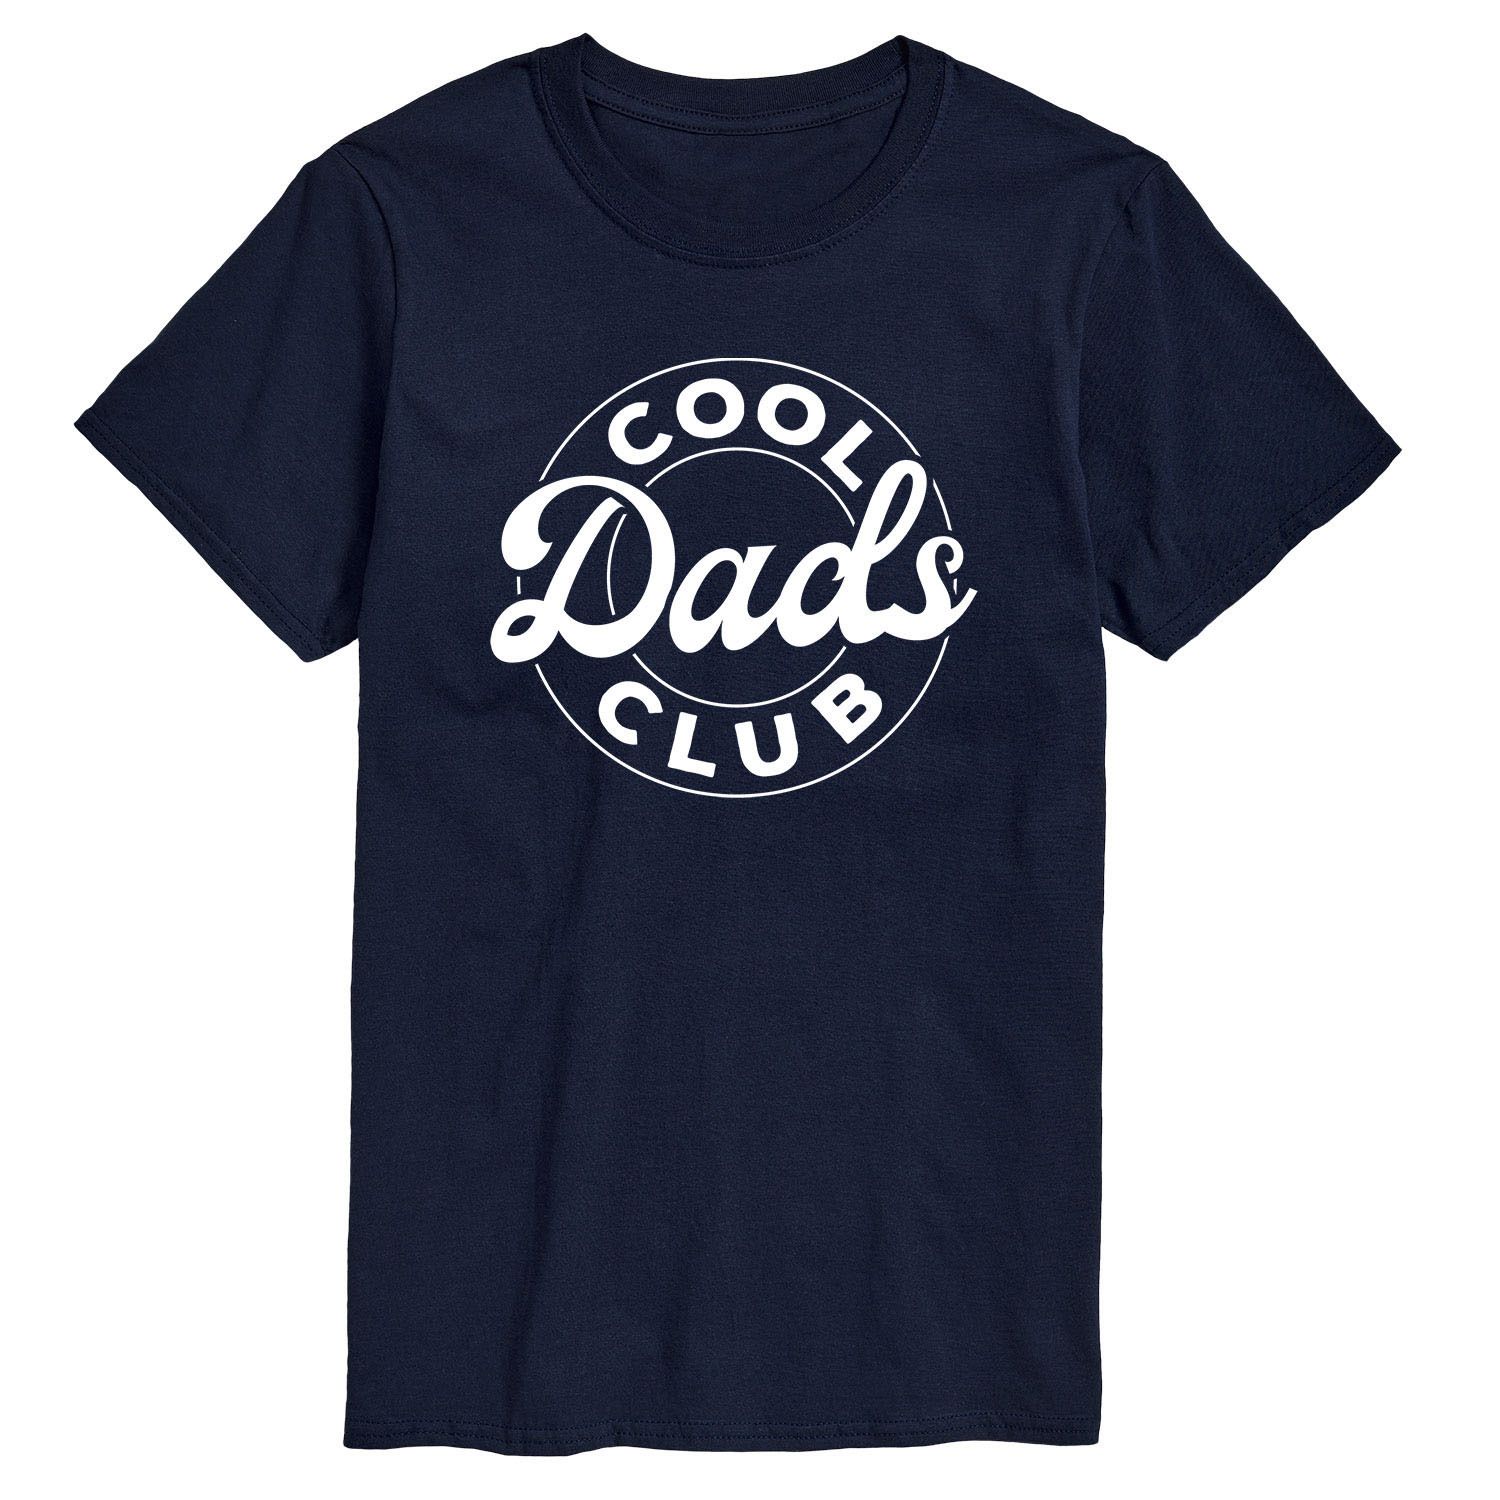 Daddy club